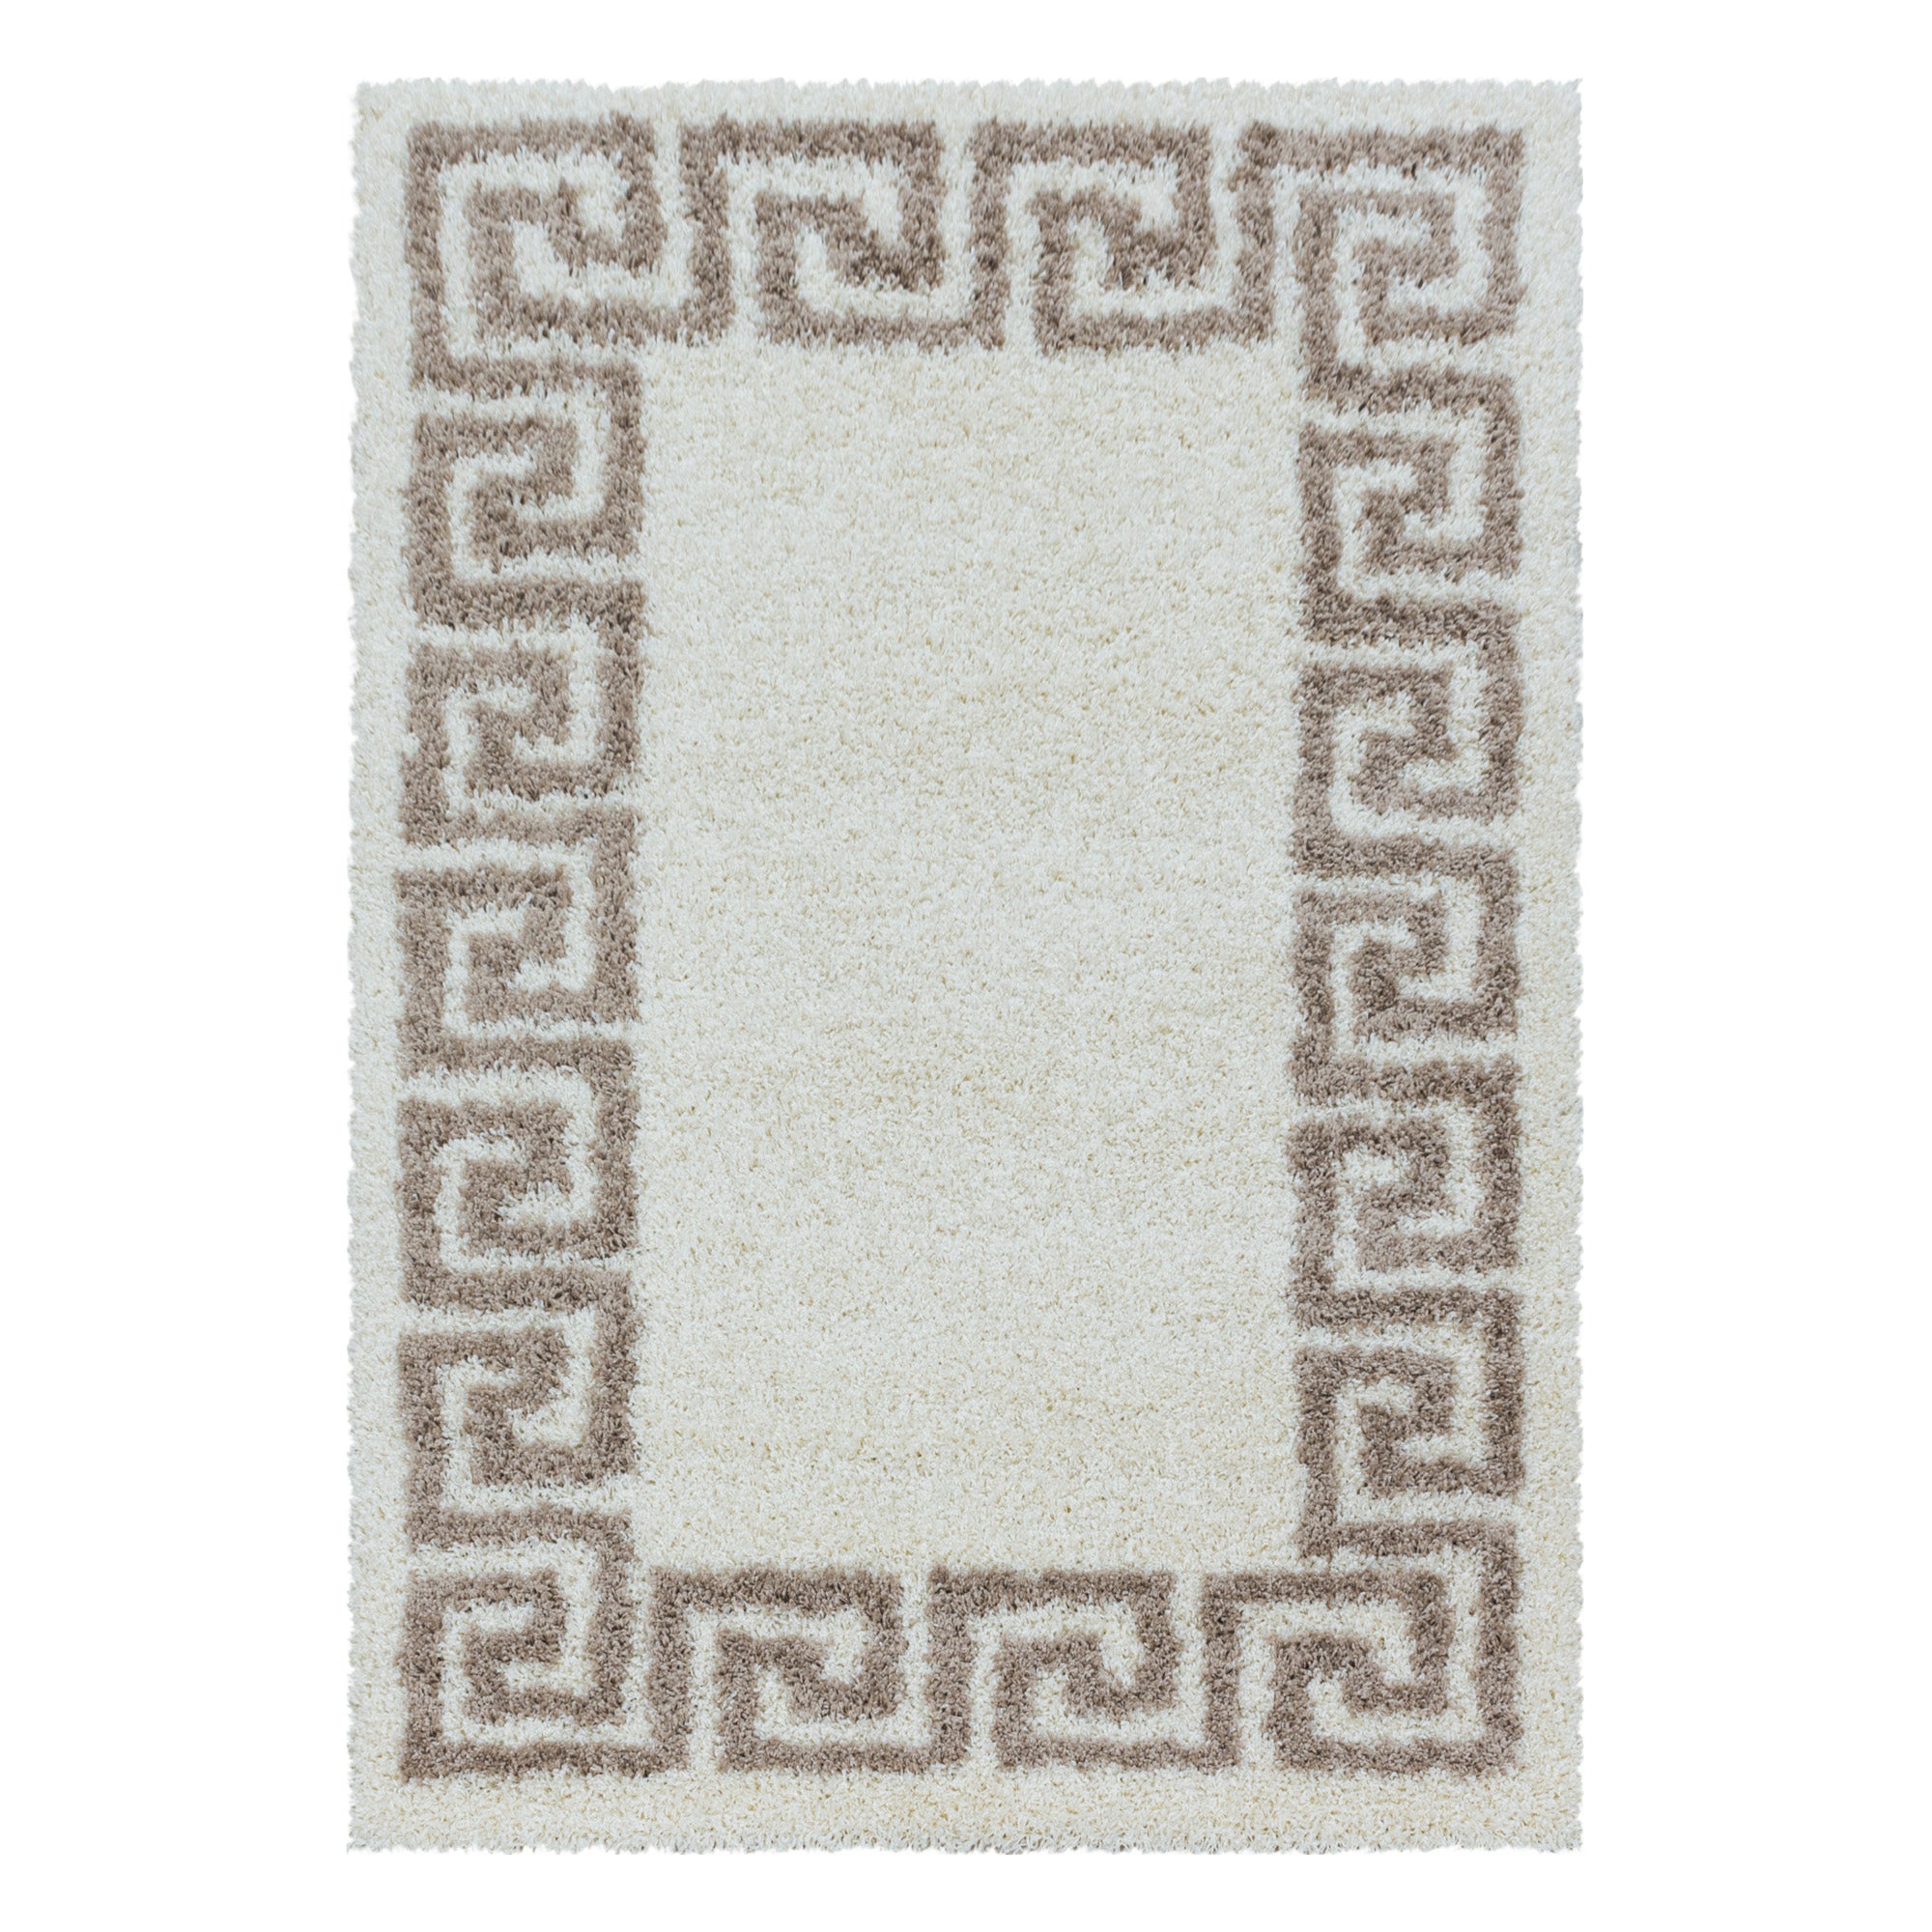 Design Hochflor Teppich Wohnzimmerteppich Muster Antike Bordüre Farbe Beige